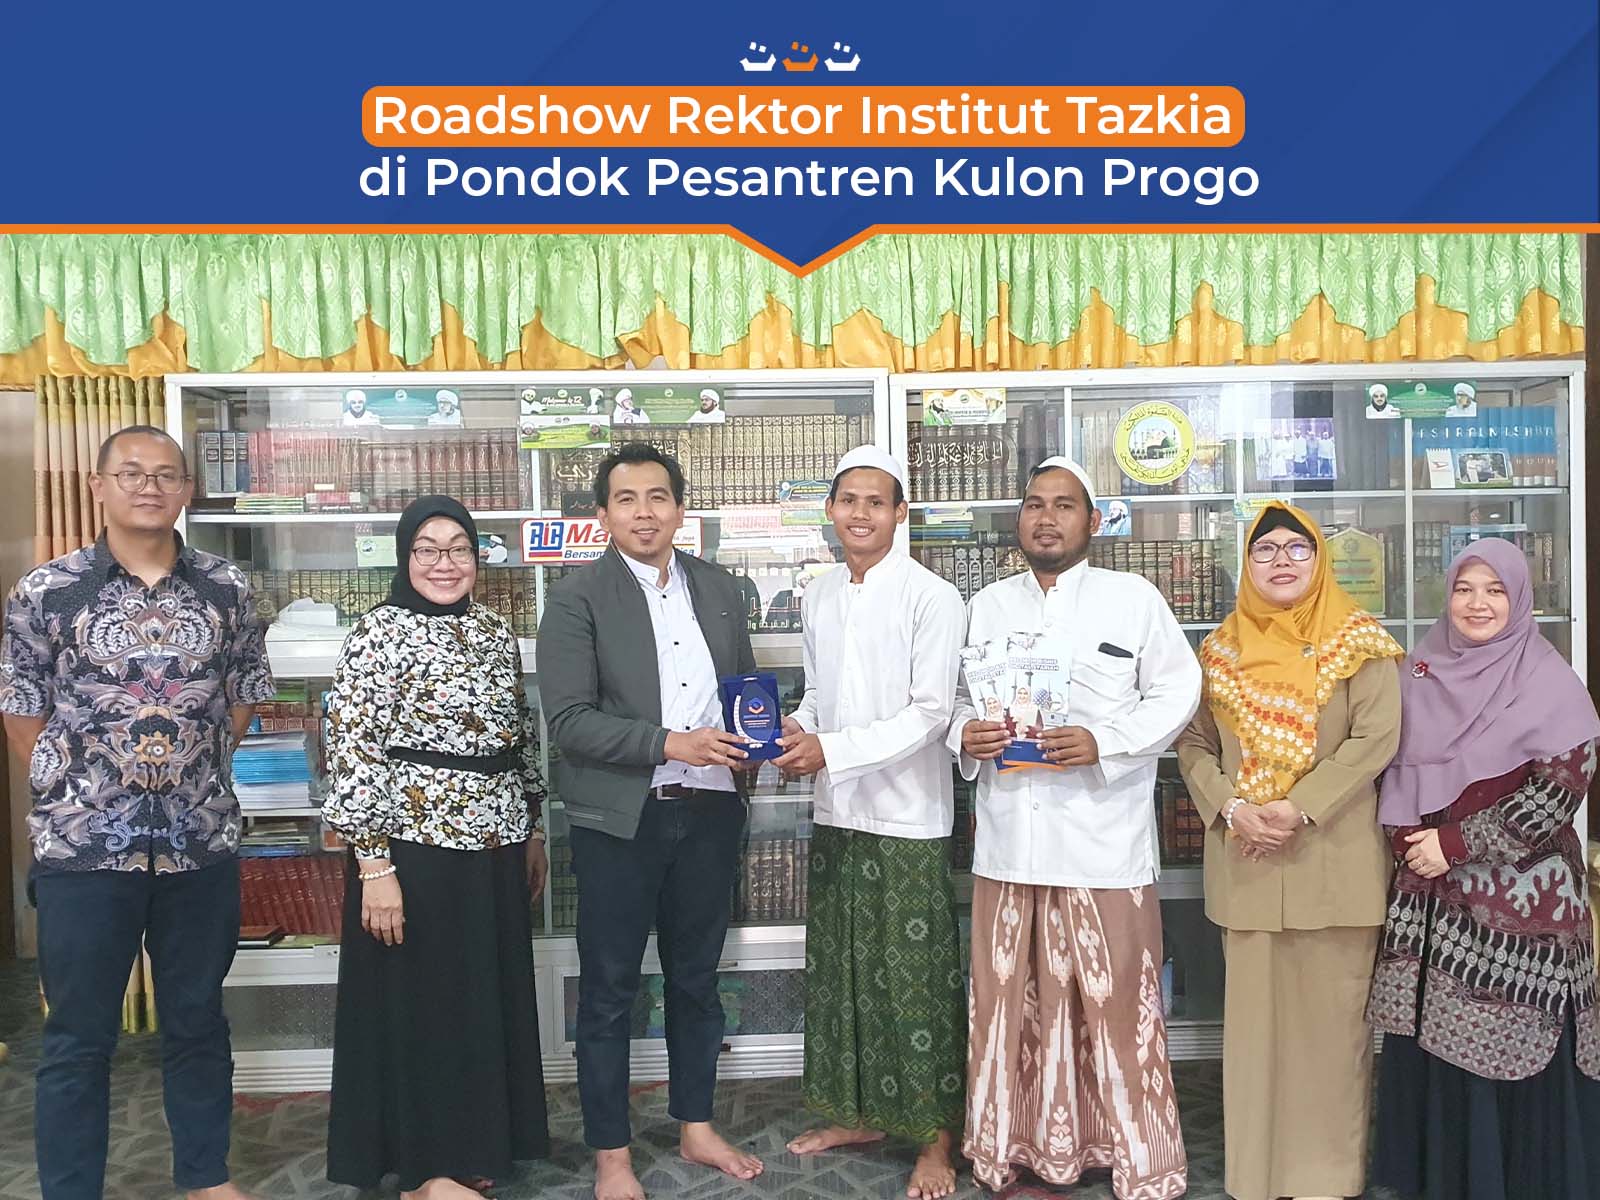 Roadshow Rektor Institut Tazkia di Pondok Pesantren Kulon Progo